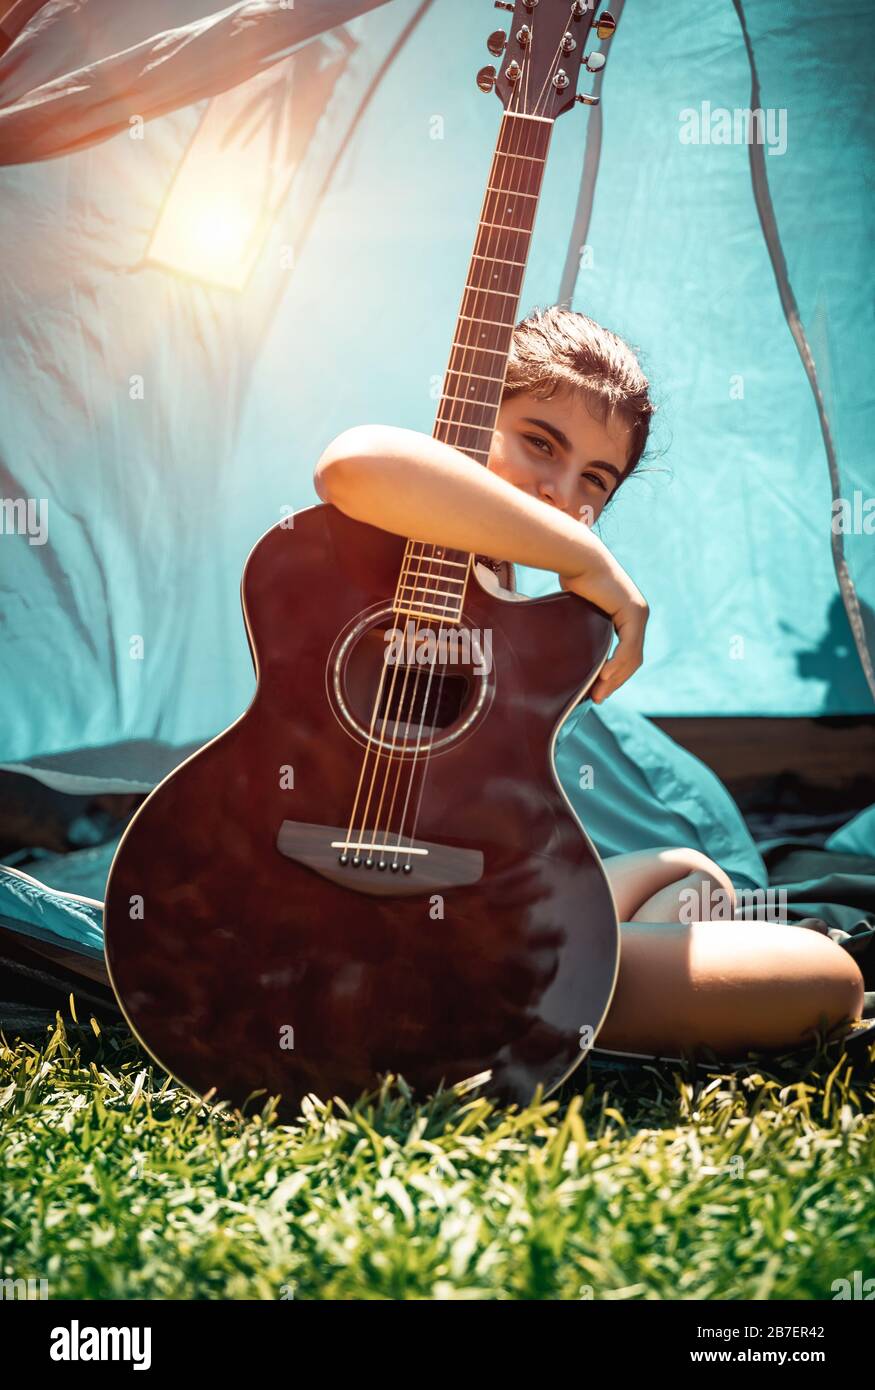 Bella ragazza adolescente seduta sulla fresca erba verde con chitarra, bambino di talento suona uno strumento musicale, godendo del tempo attivo al campo estivo Foto Stock